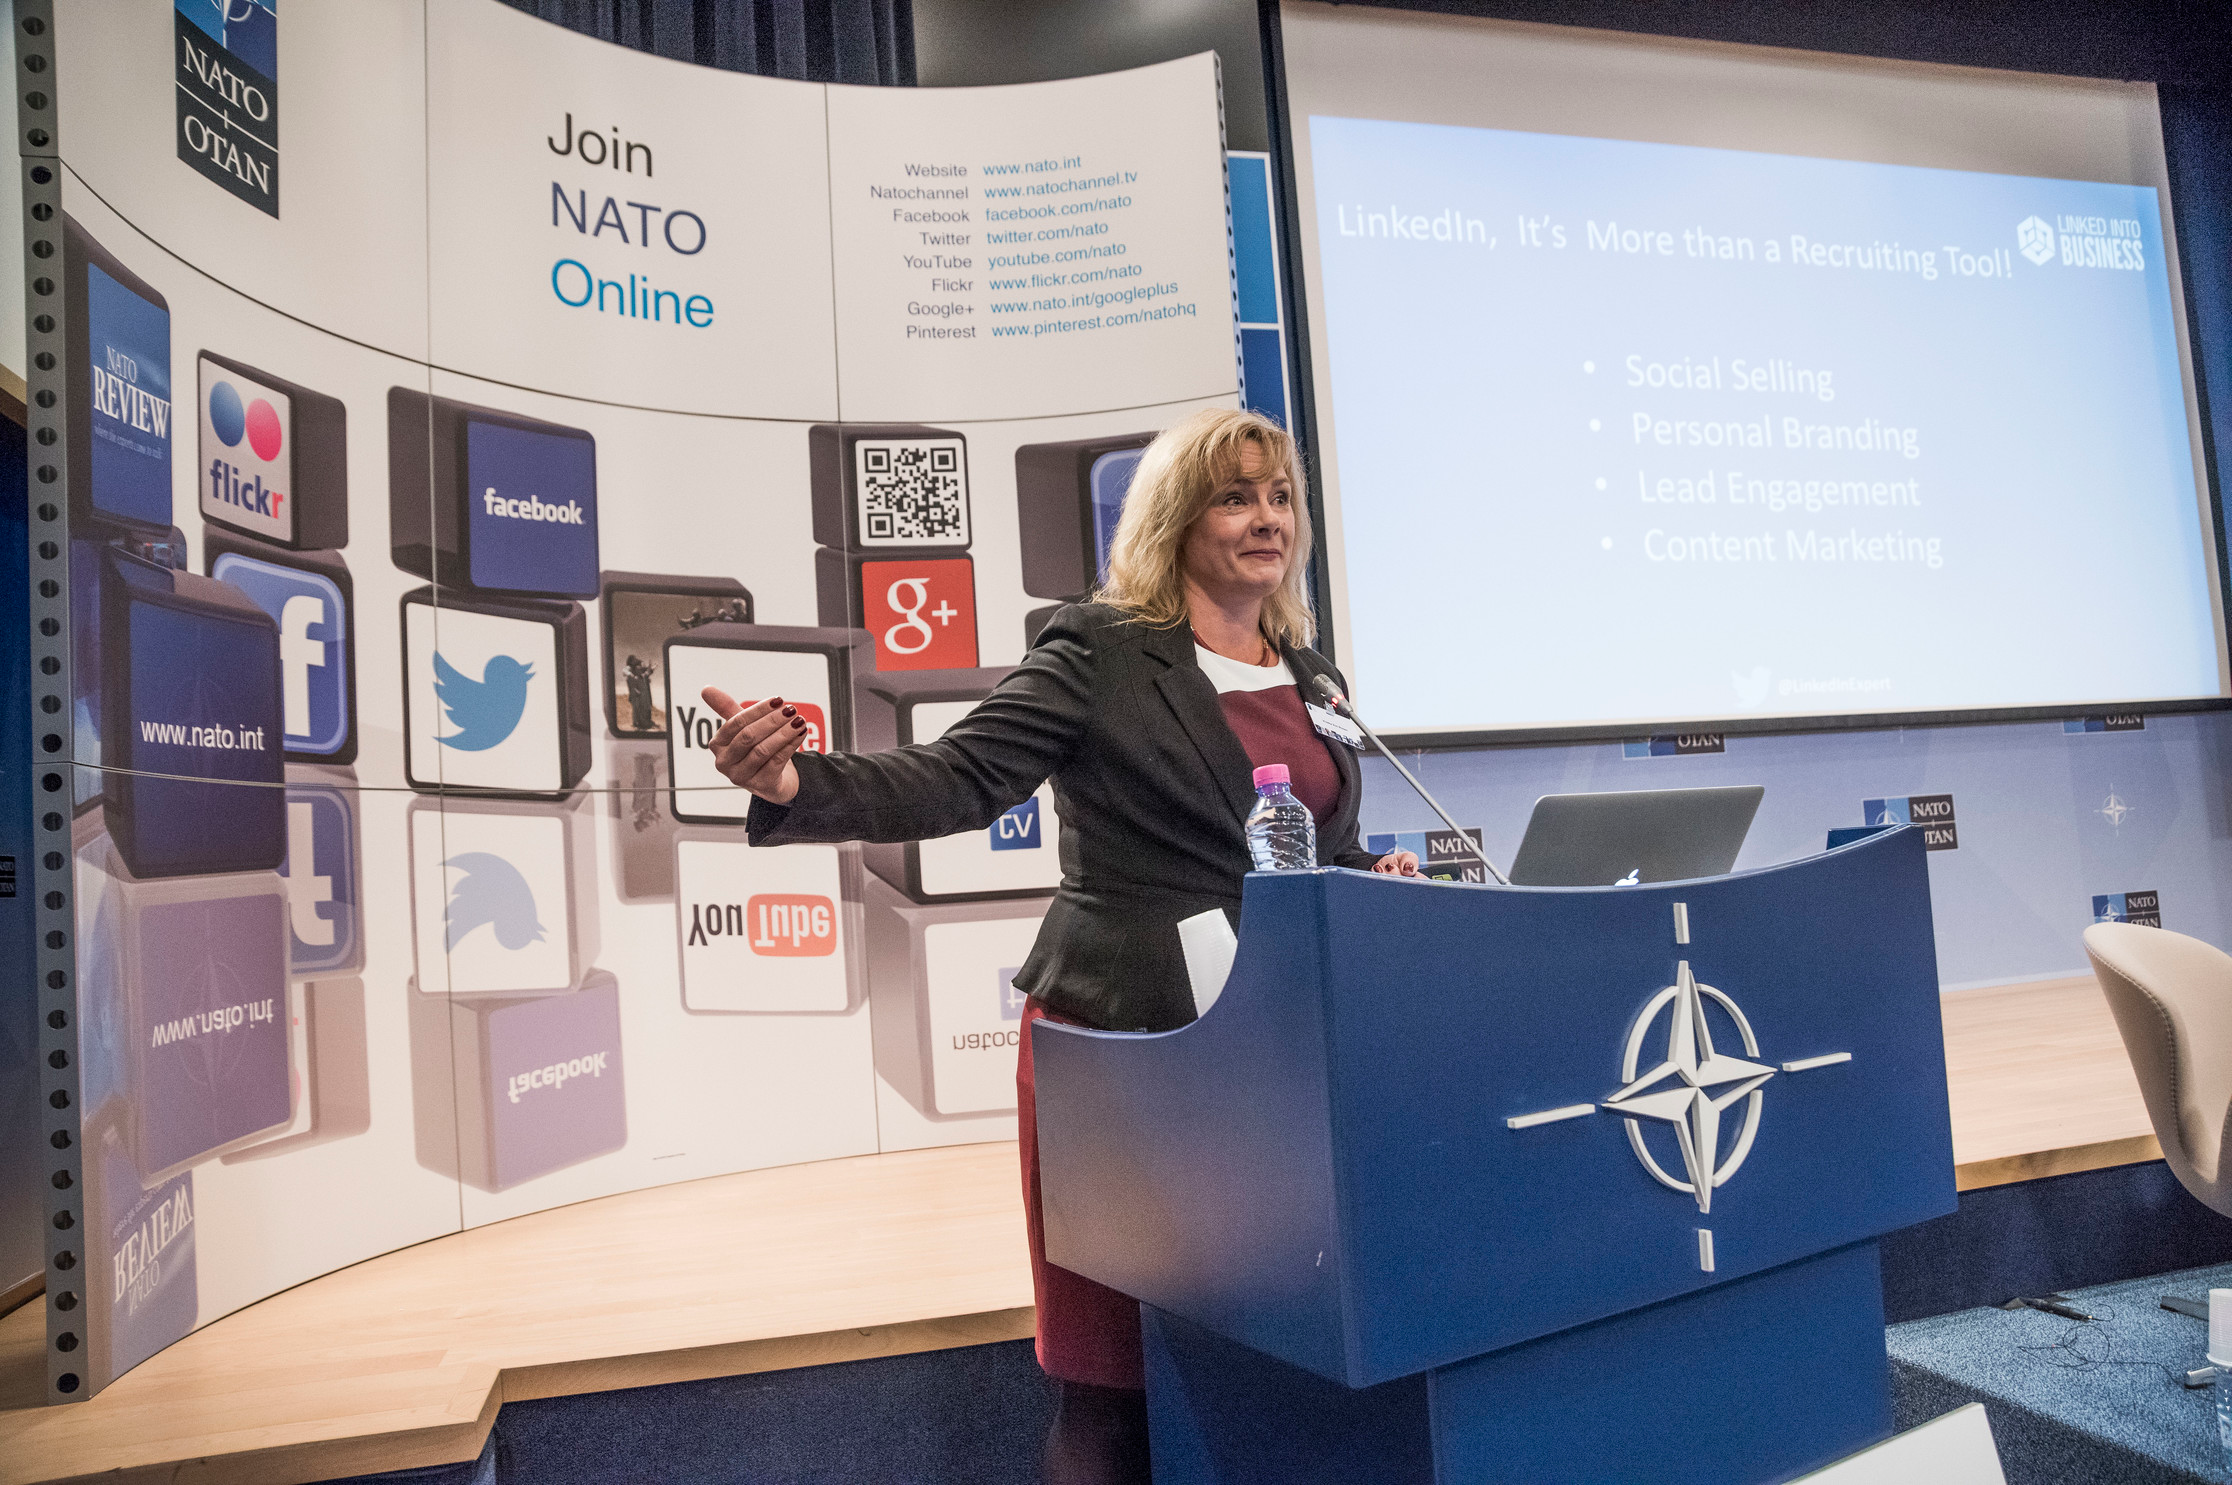 Viveka von Rosen speaking in Nato.